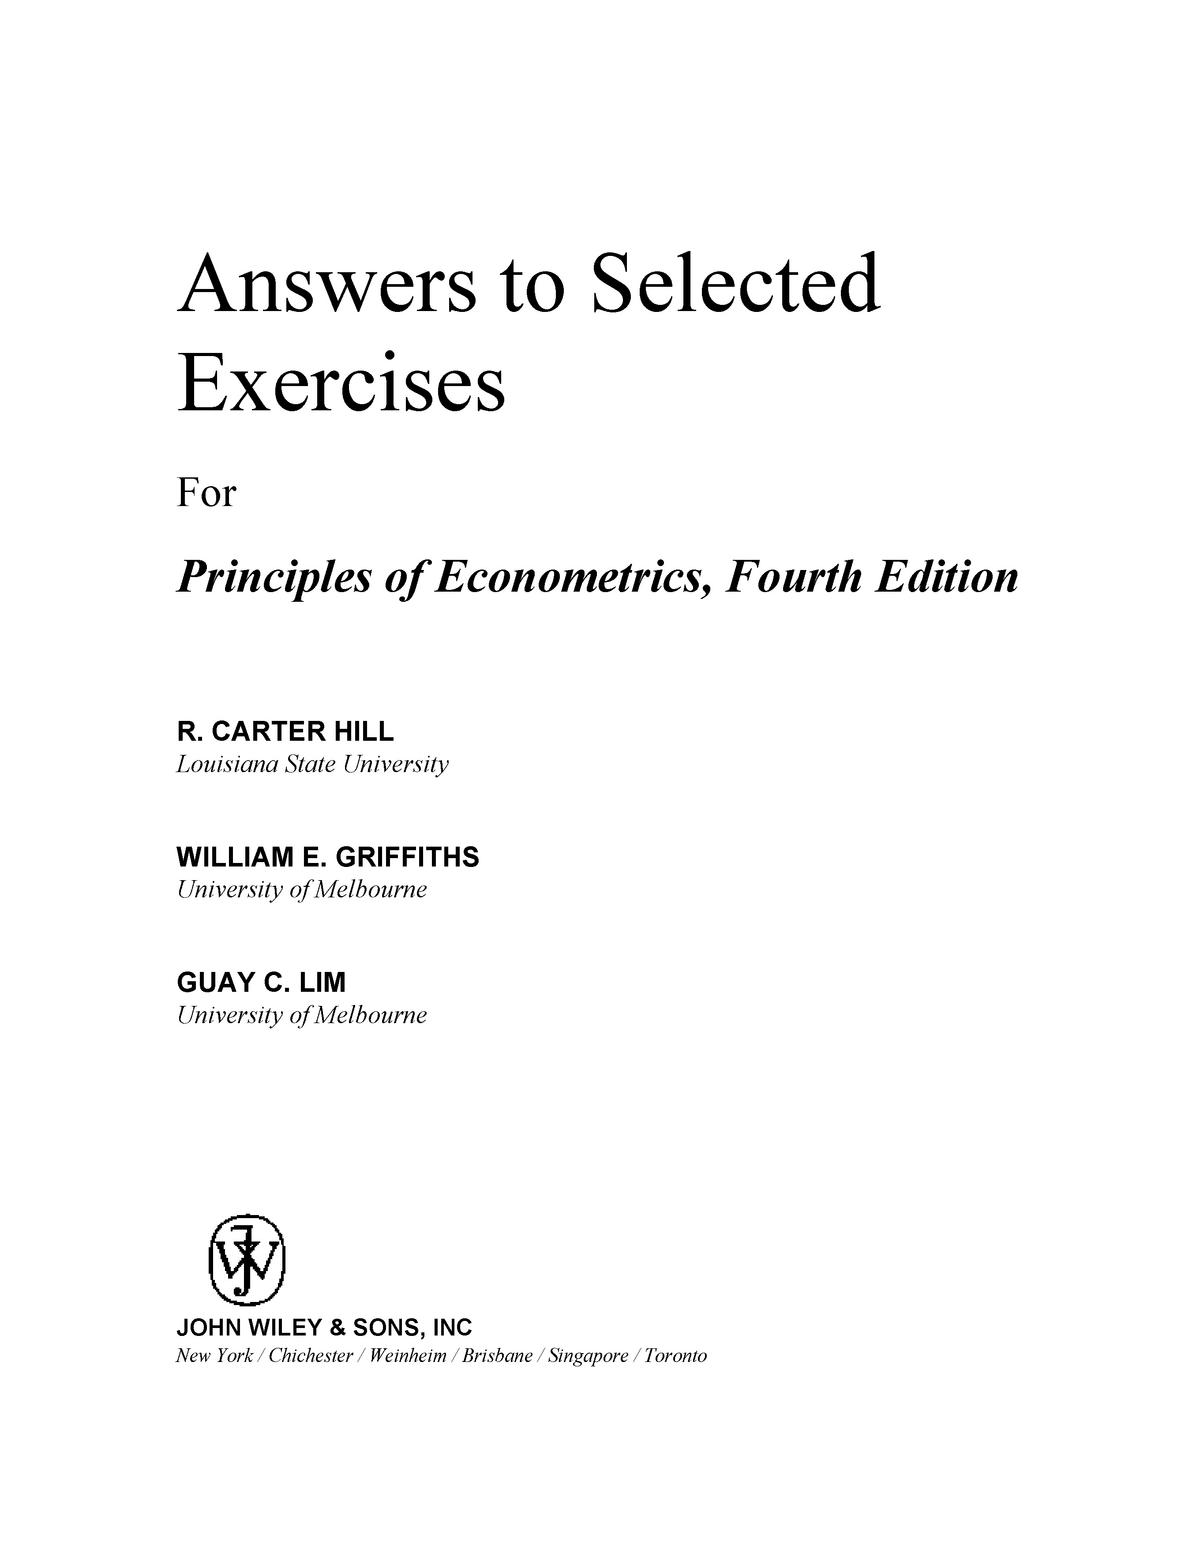 Prin Of Econometrics Sol Manual 4e S203029 Econometrics - 